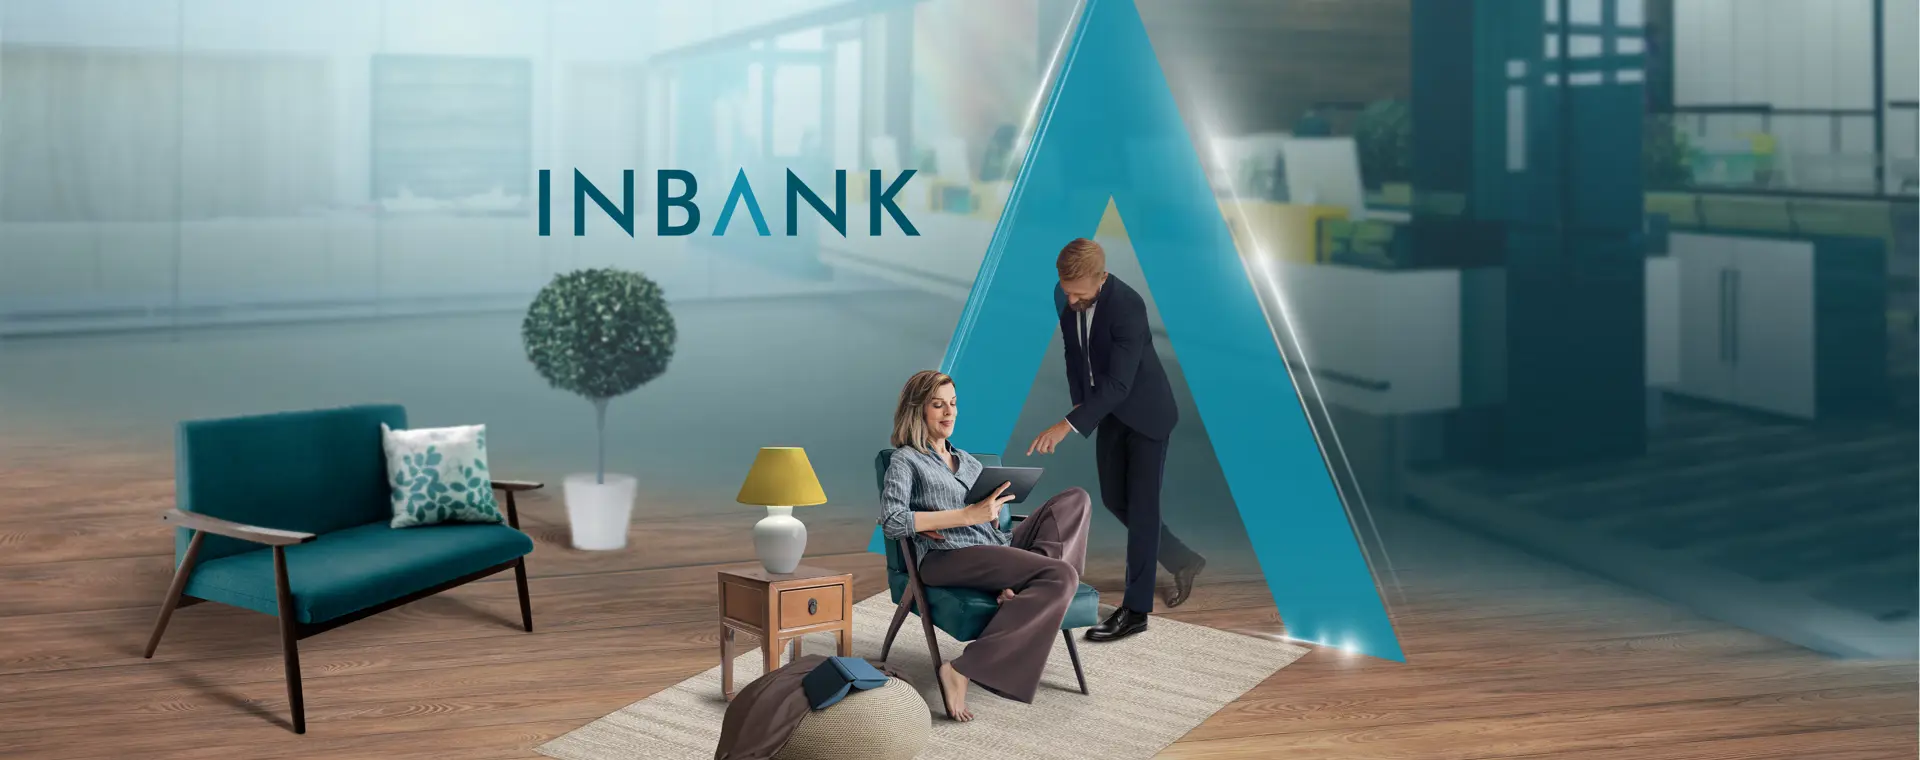 Più connesso, fianco a fianco: la nuova Inbank App è stata rilasc